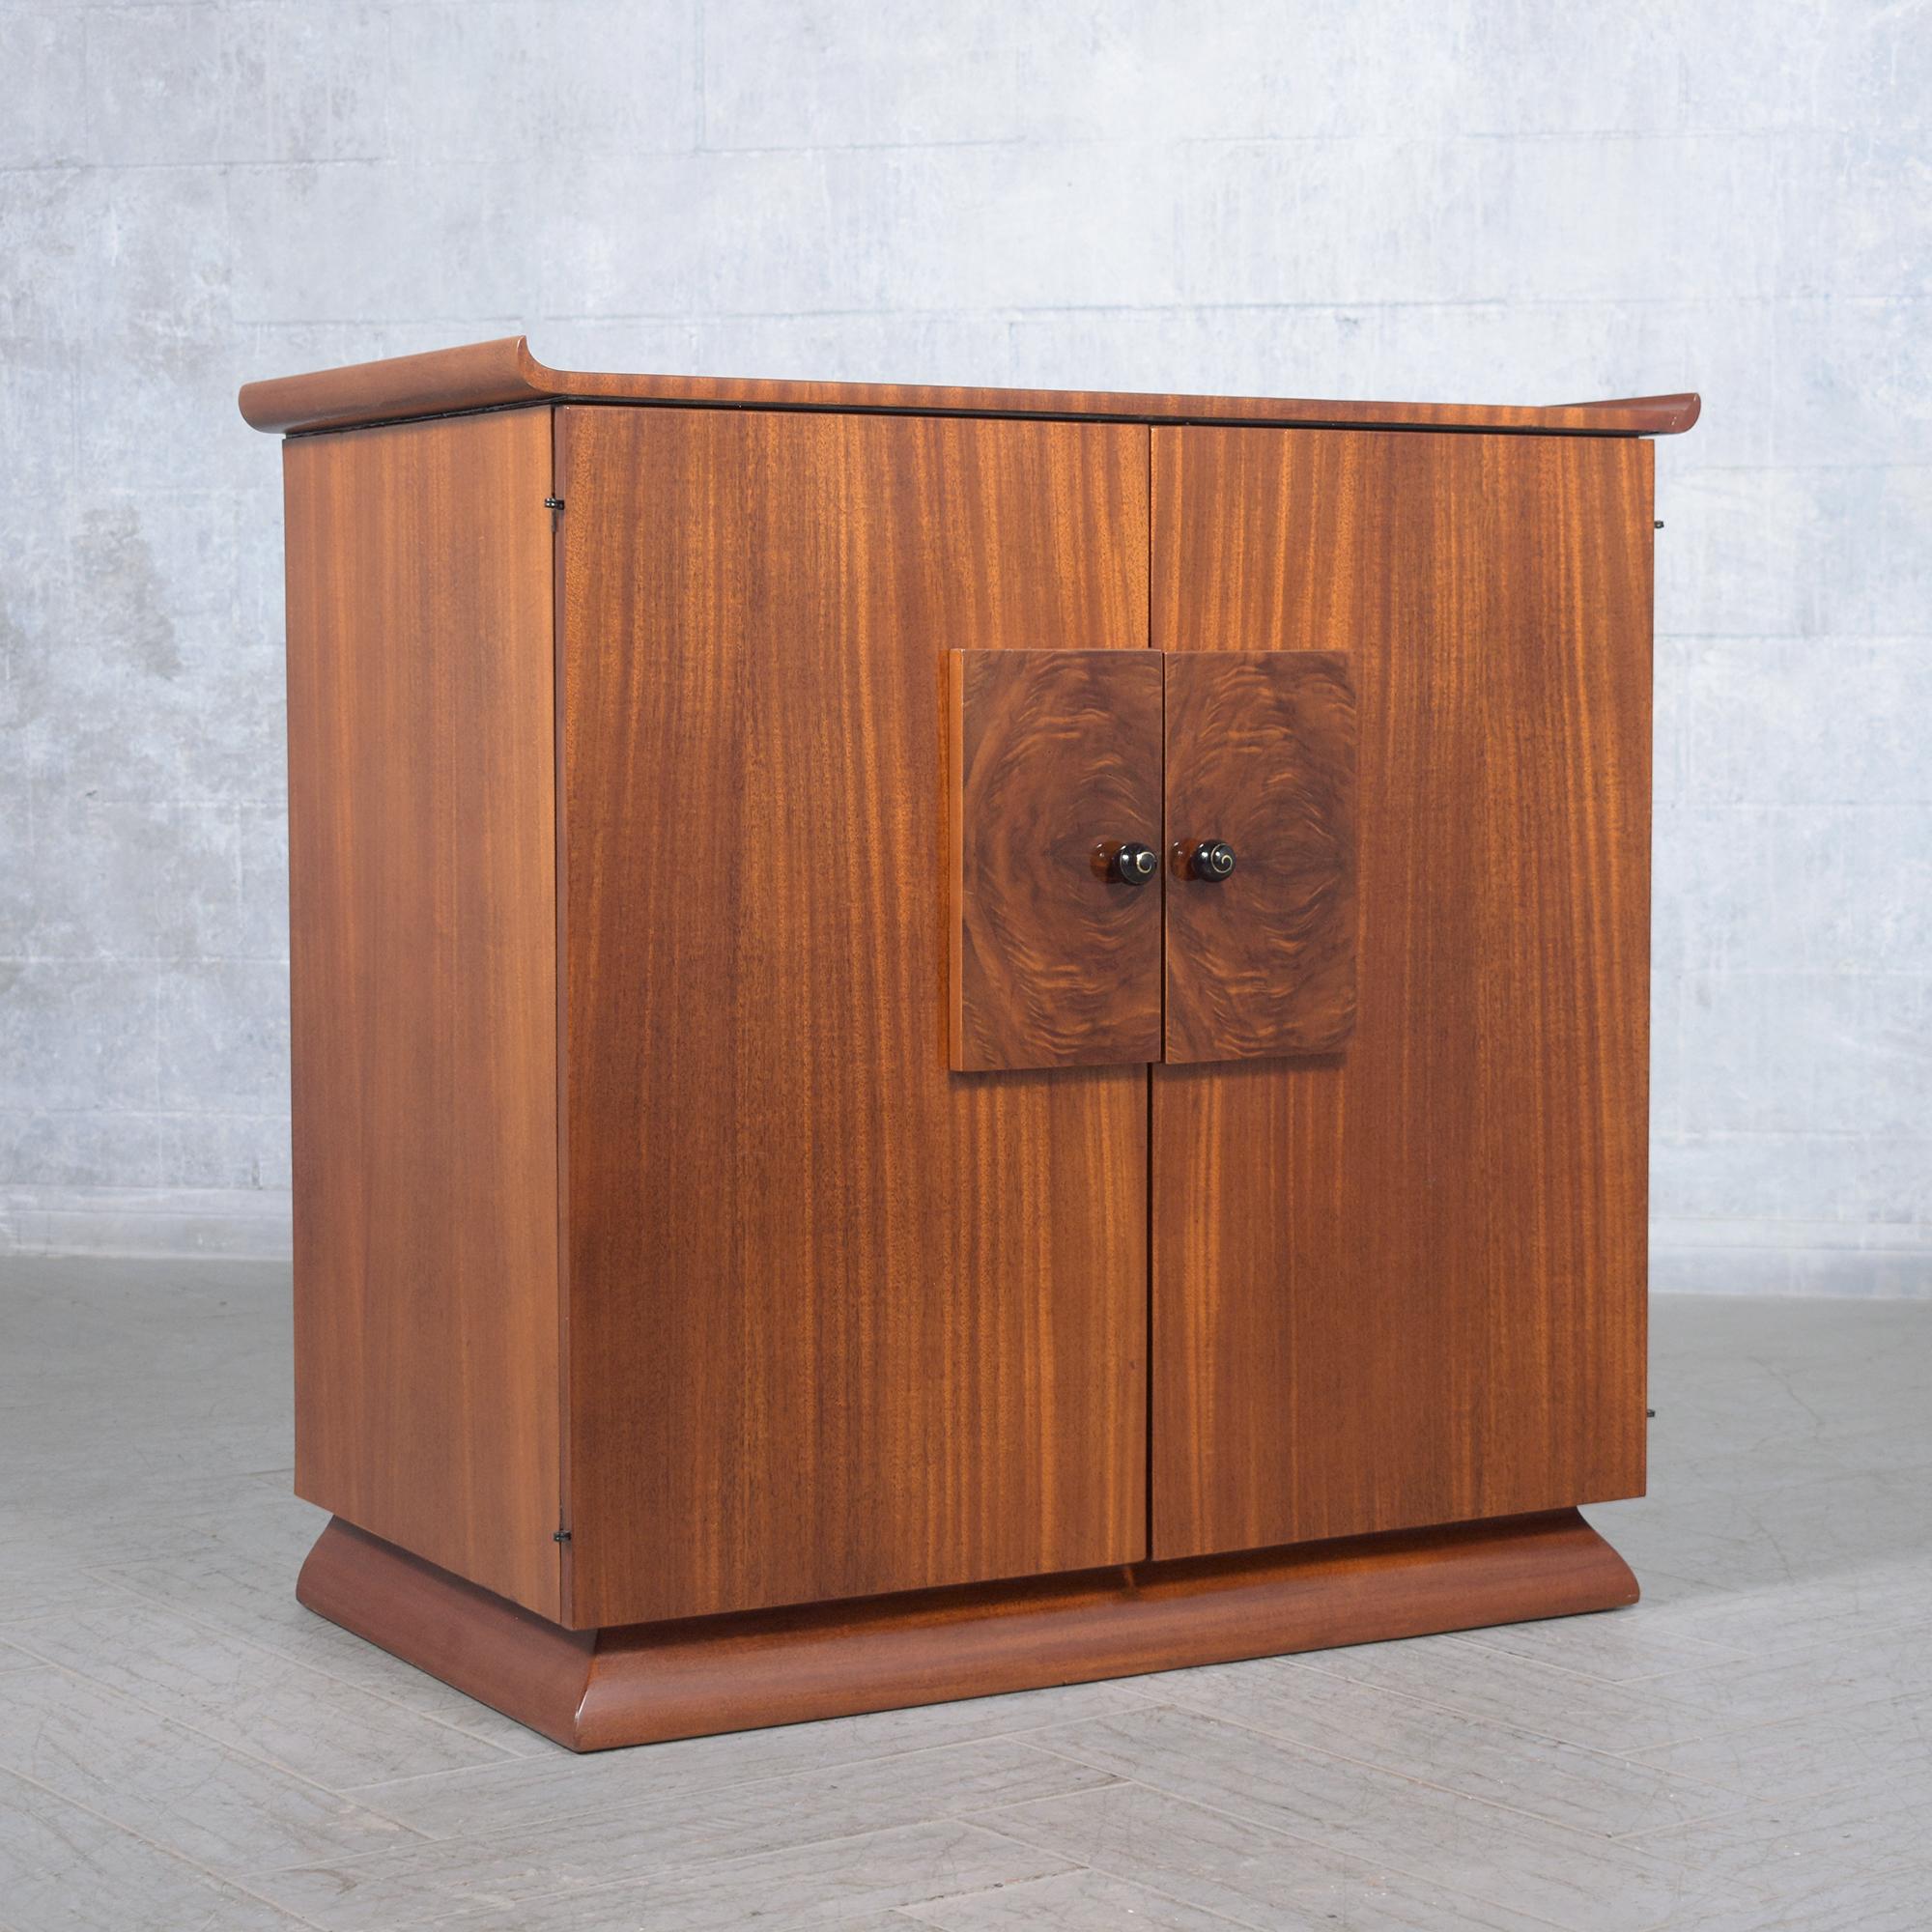 Restored Vintage Mid-Century Wood Cabinet with Burl Door Details 1